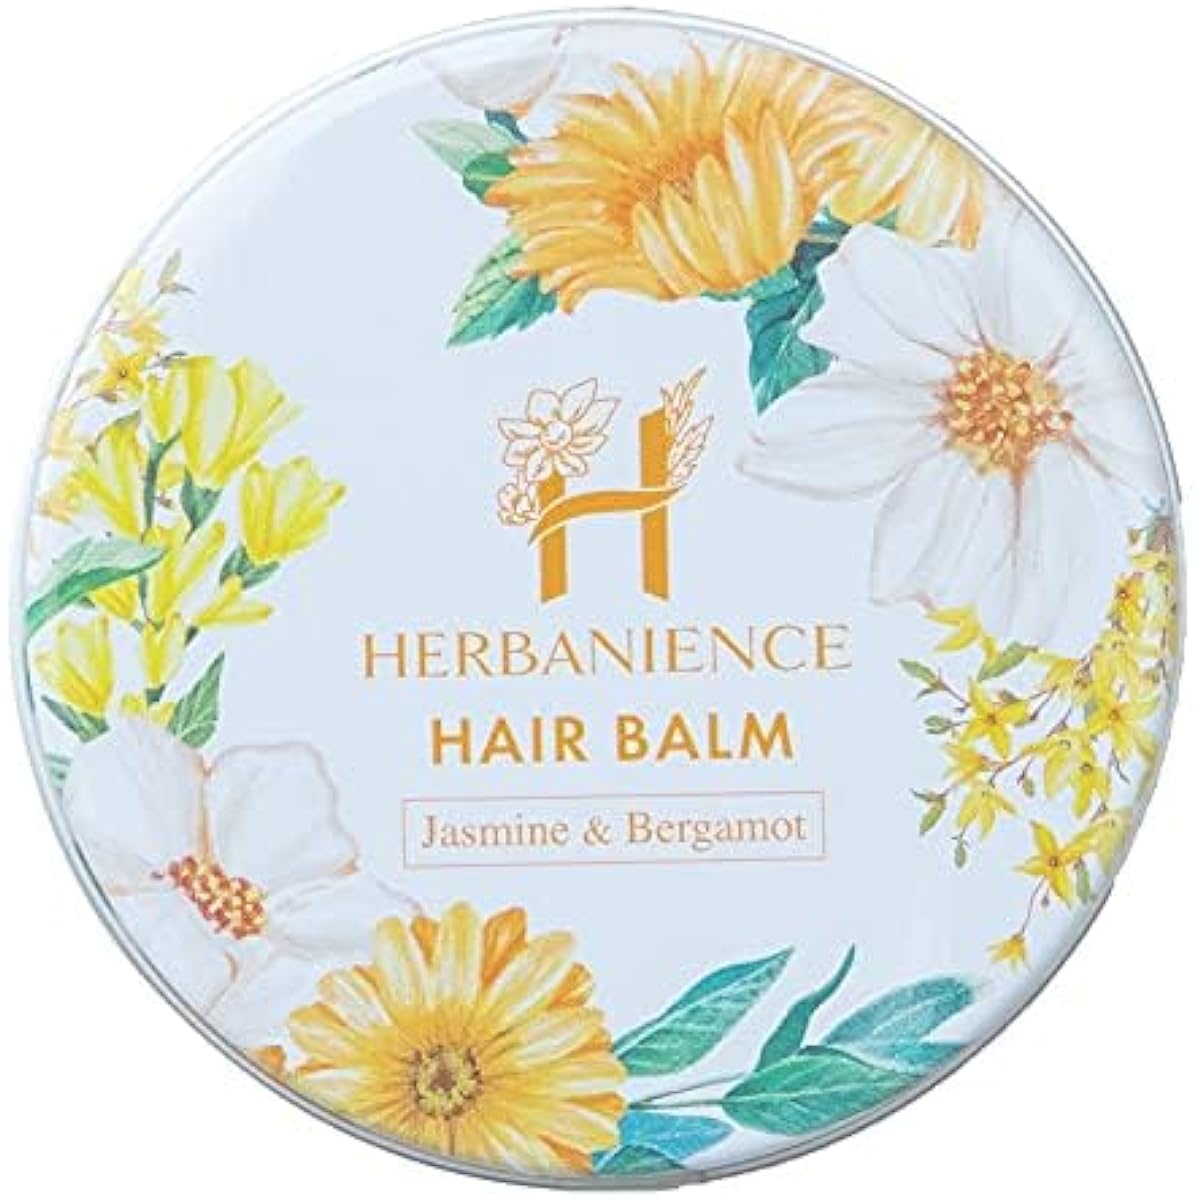 Sakura no Mori Herbanience Hair Balm 35g Contains organic ingredients Naturally derived ingredients Jasmine Bergamot